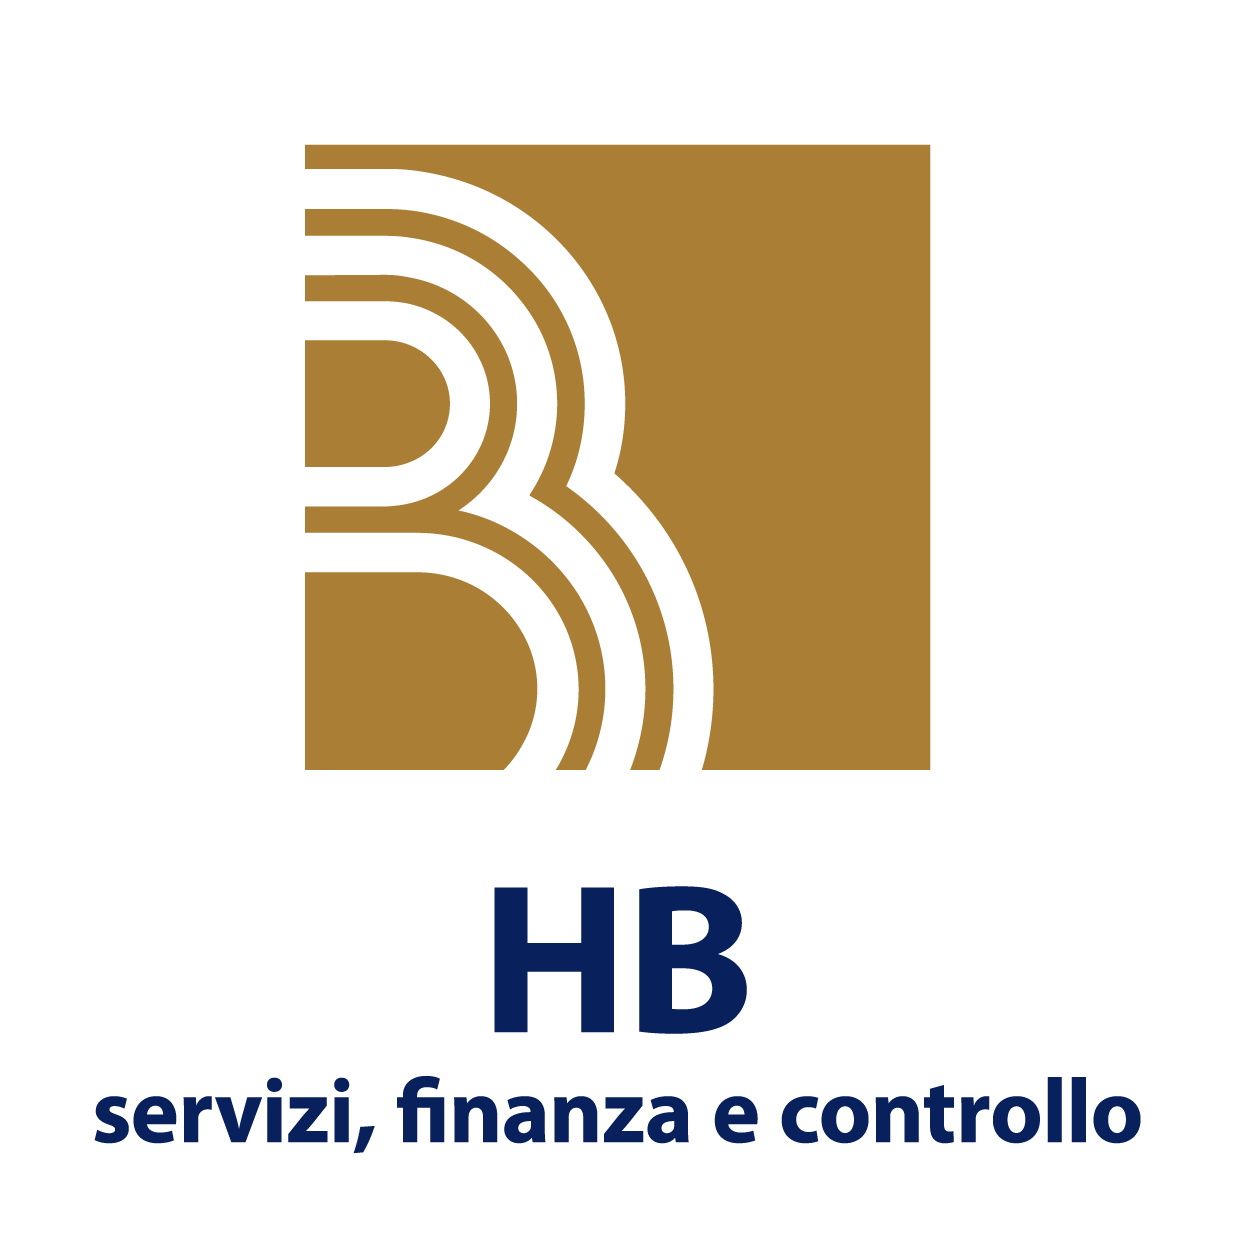 hb servizi finanza e controllo